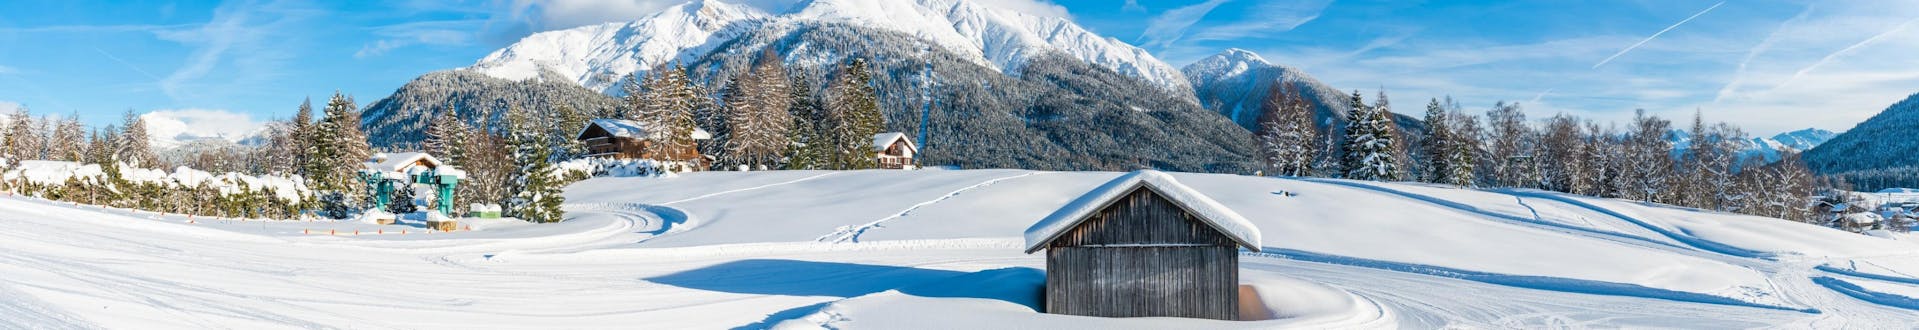 Die verschneite Landschaft um Seefeld in Tirol, wo die örtlichen Skischulen ihre Skikurse anbieten.